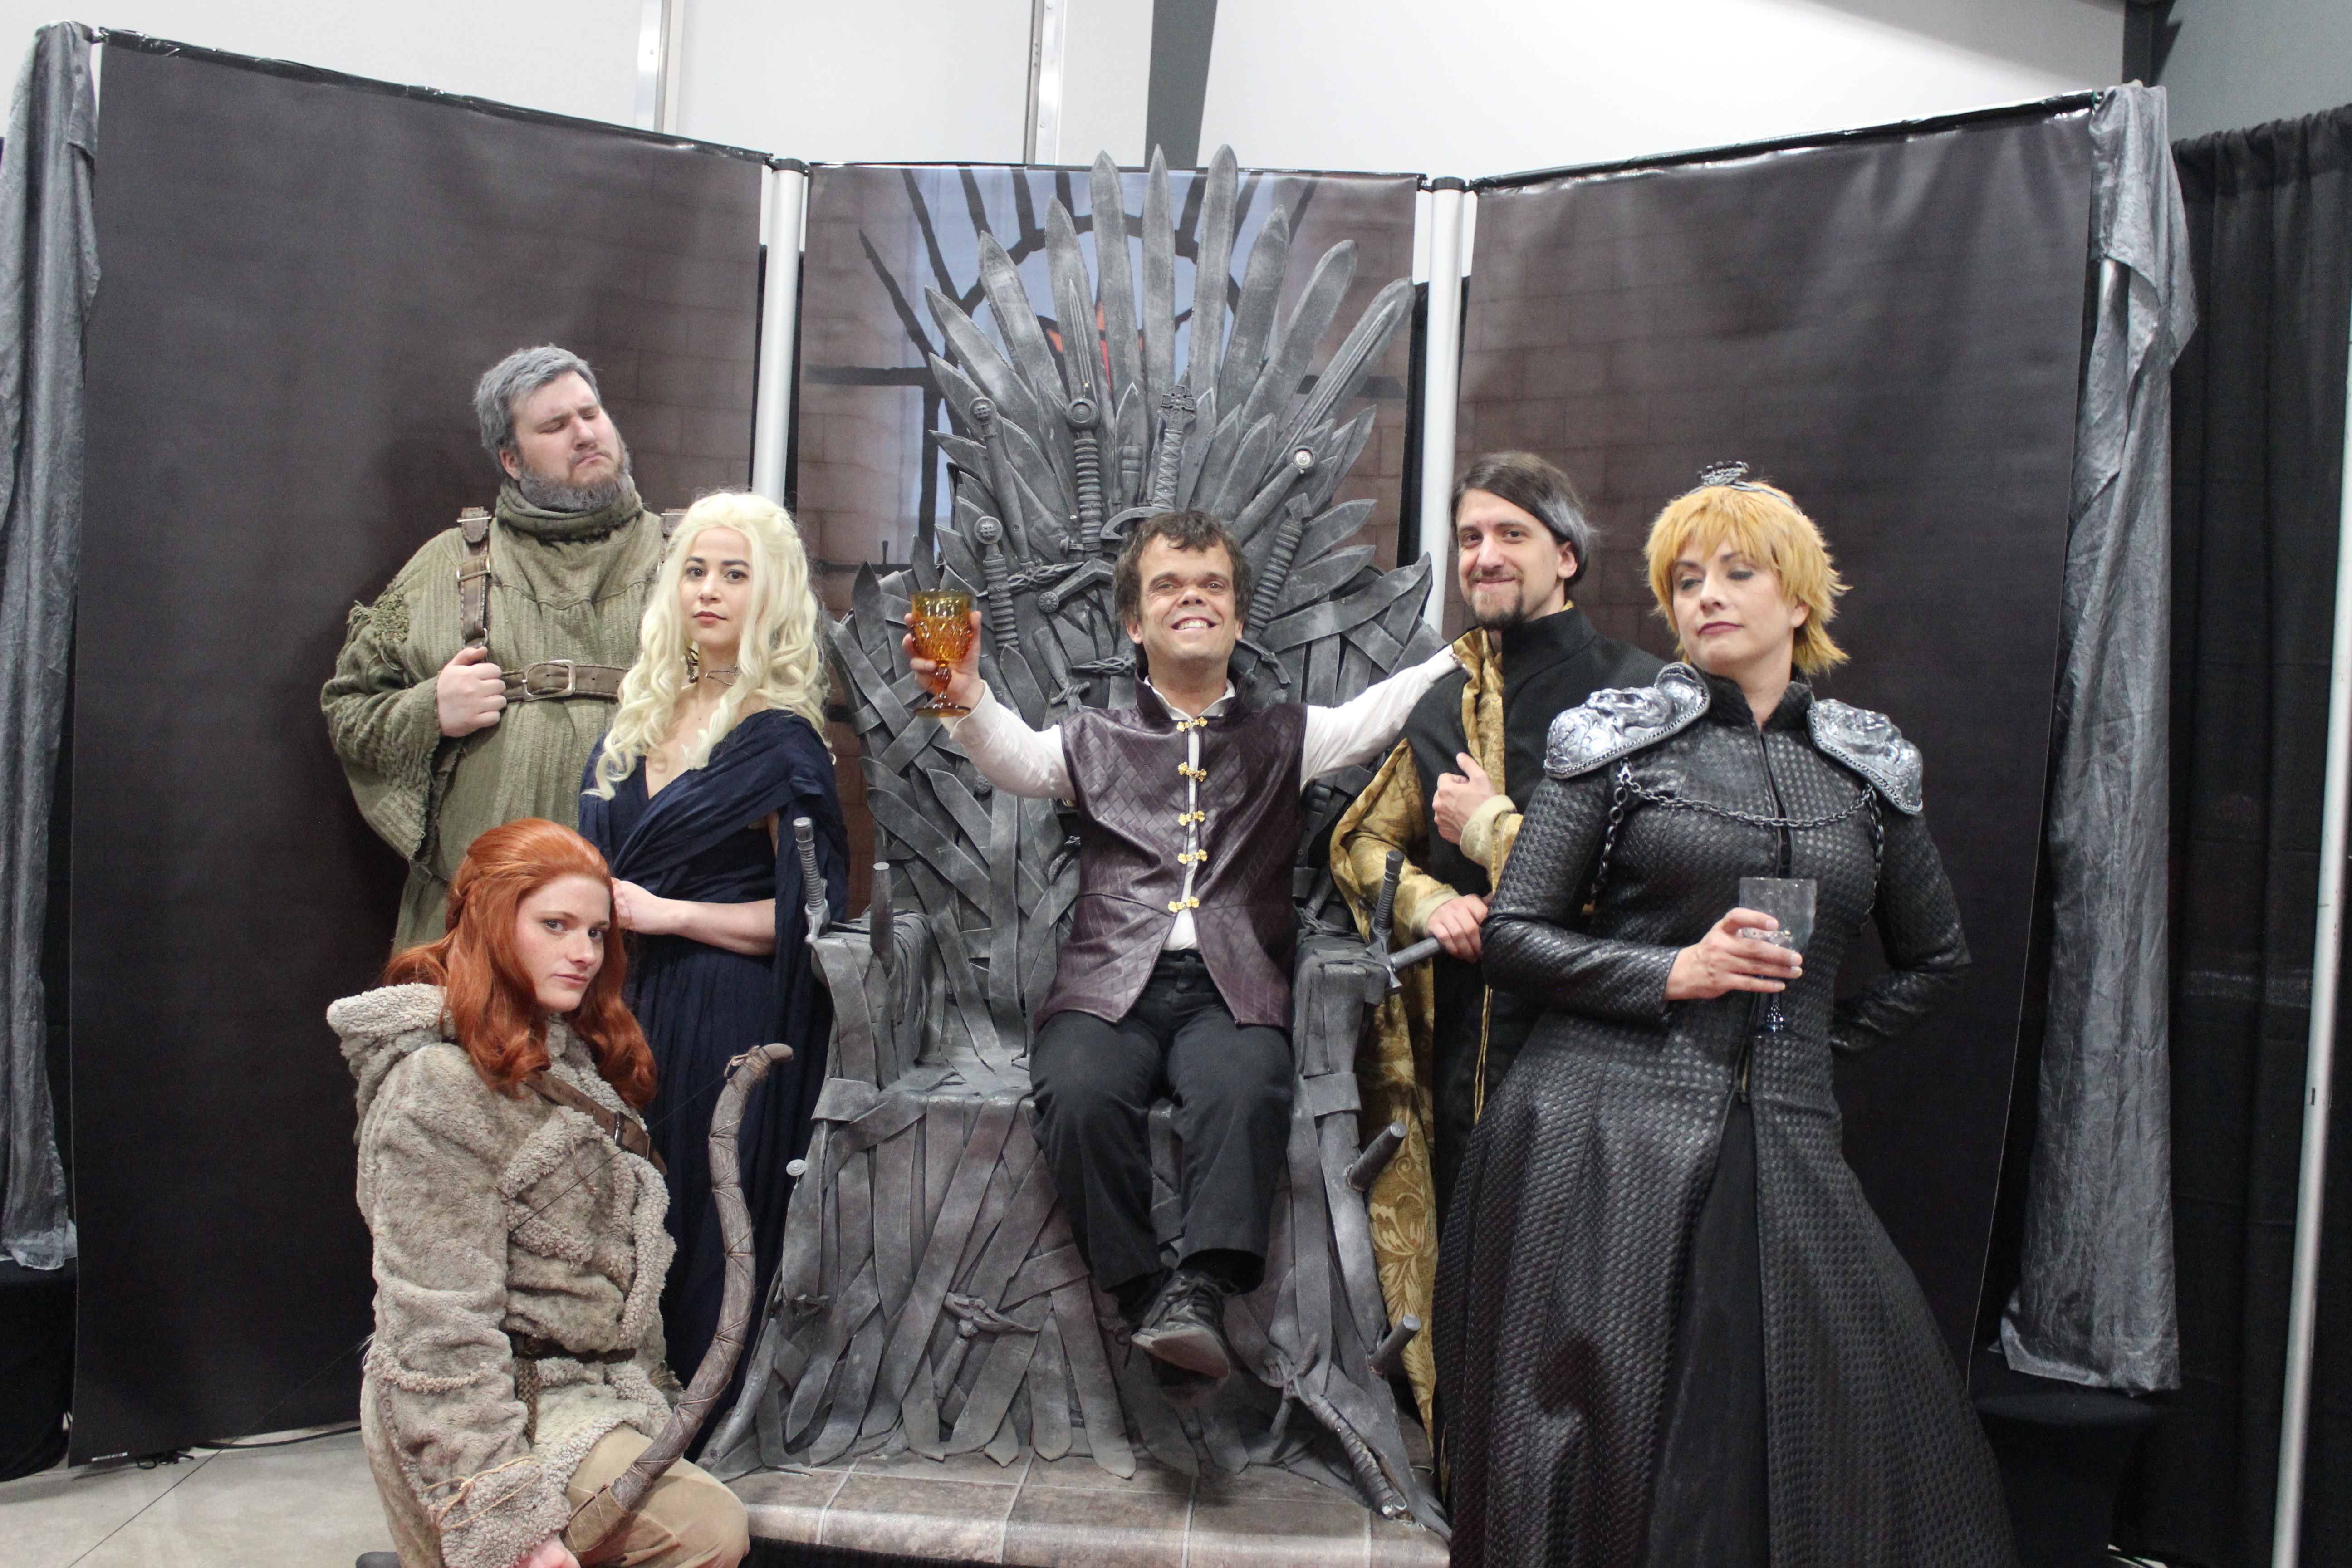 La qualité des costumes produits par les membres de Game of Thrones Cosplay Montréal était très impressionnante!